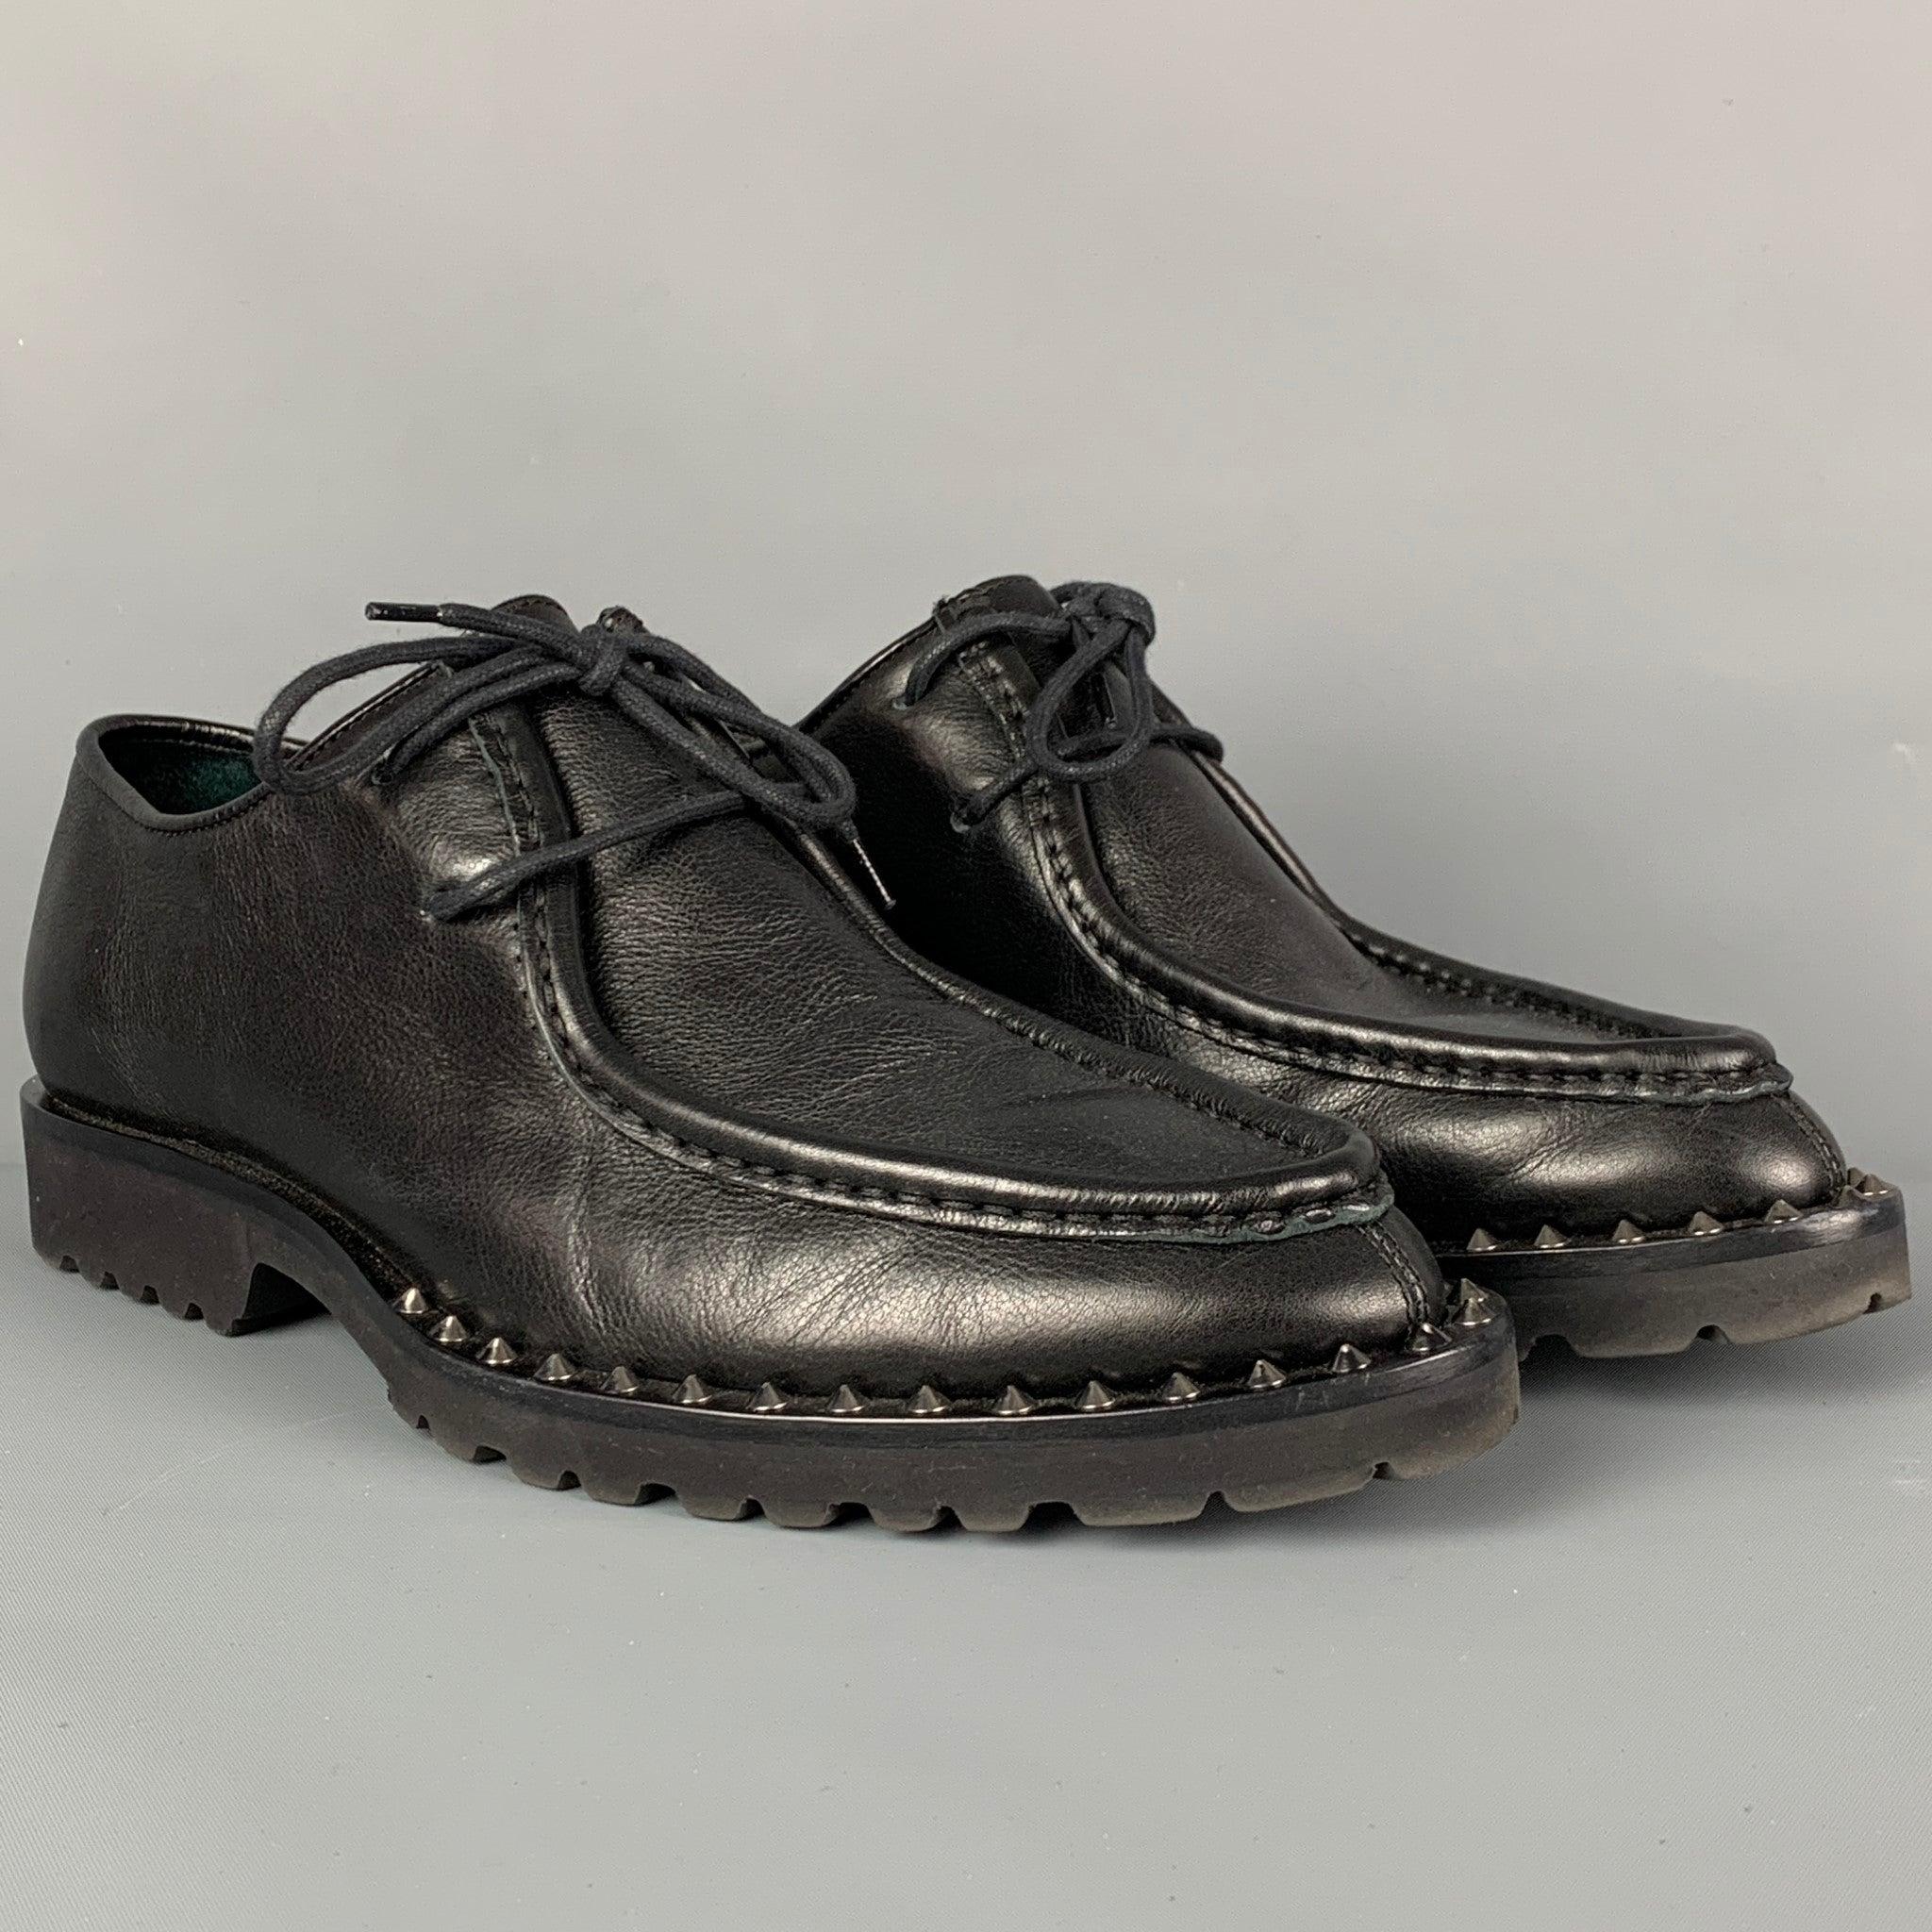 Les chaussures 'Worlds End' de DSQUARED2 sont en cuir noir et présentent des détails cloutés, un bout étroit et une fermeture à lacets. Comprend une boîte. Fabriquées en Italie.
Excellent
Etat d'occasion. 

Marqué :  
39Semelle d'usure : 11.75